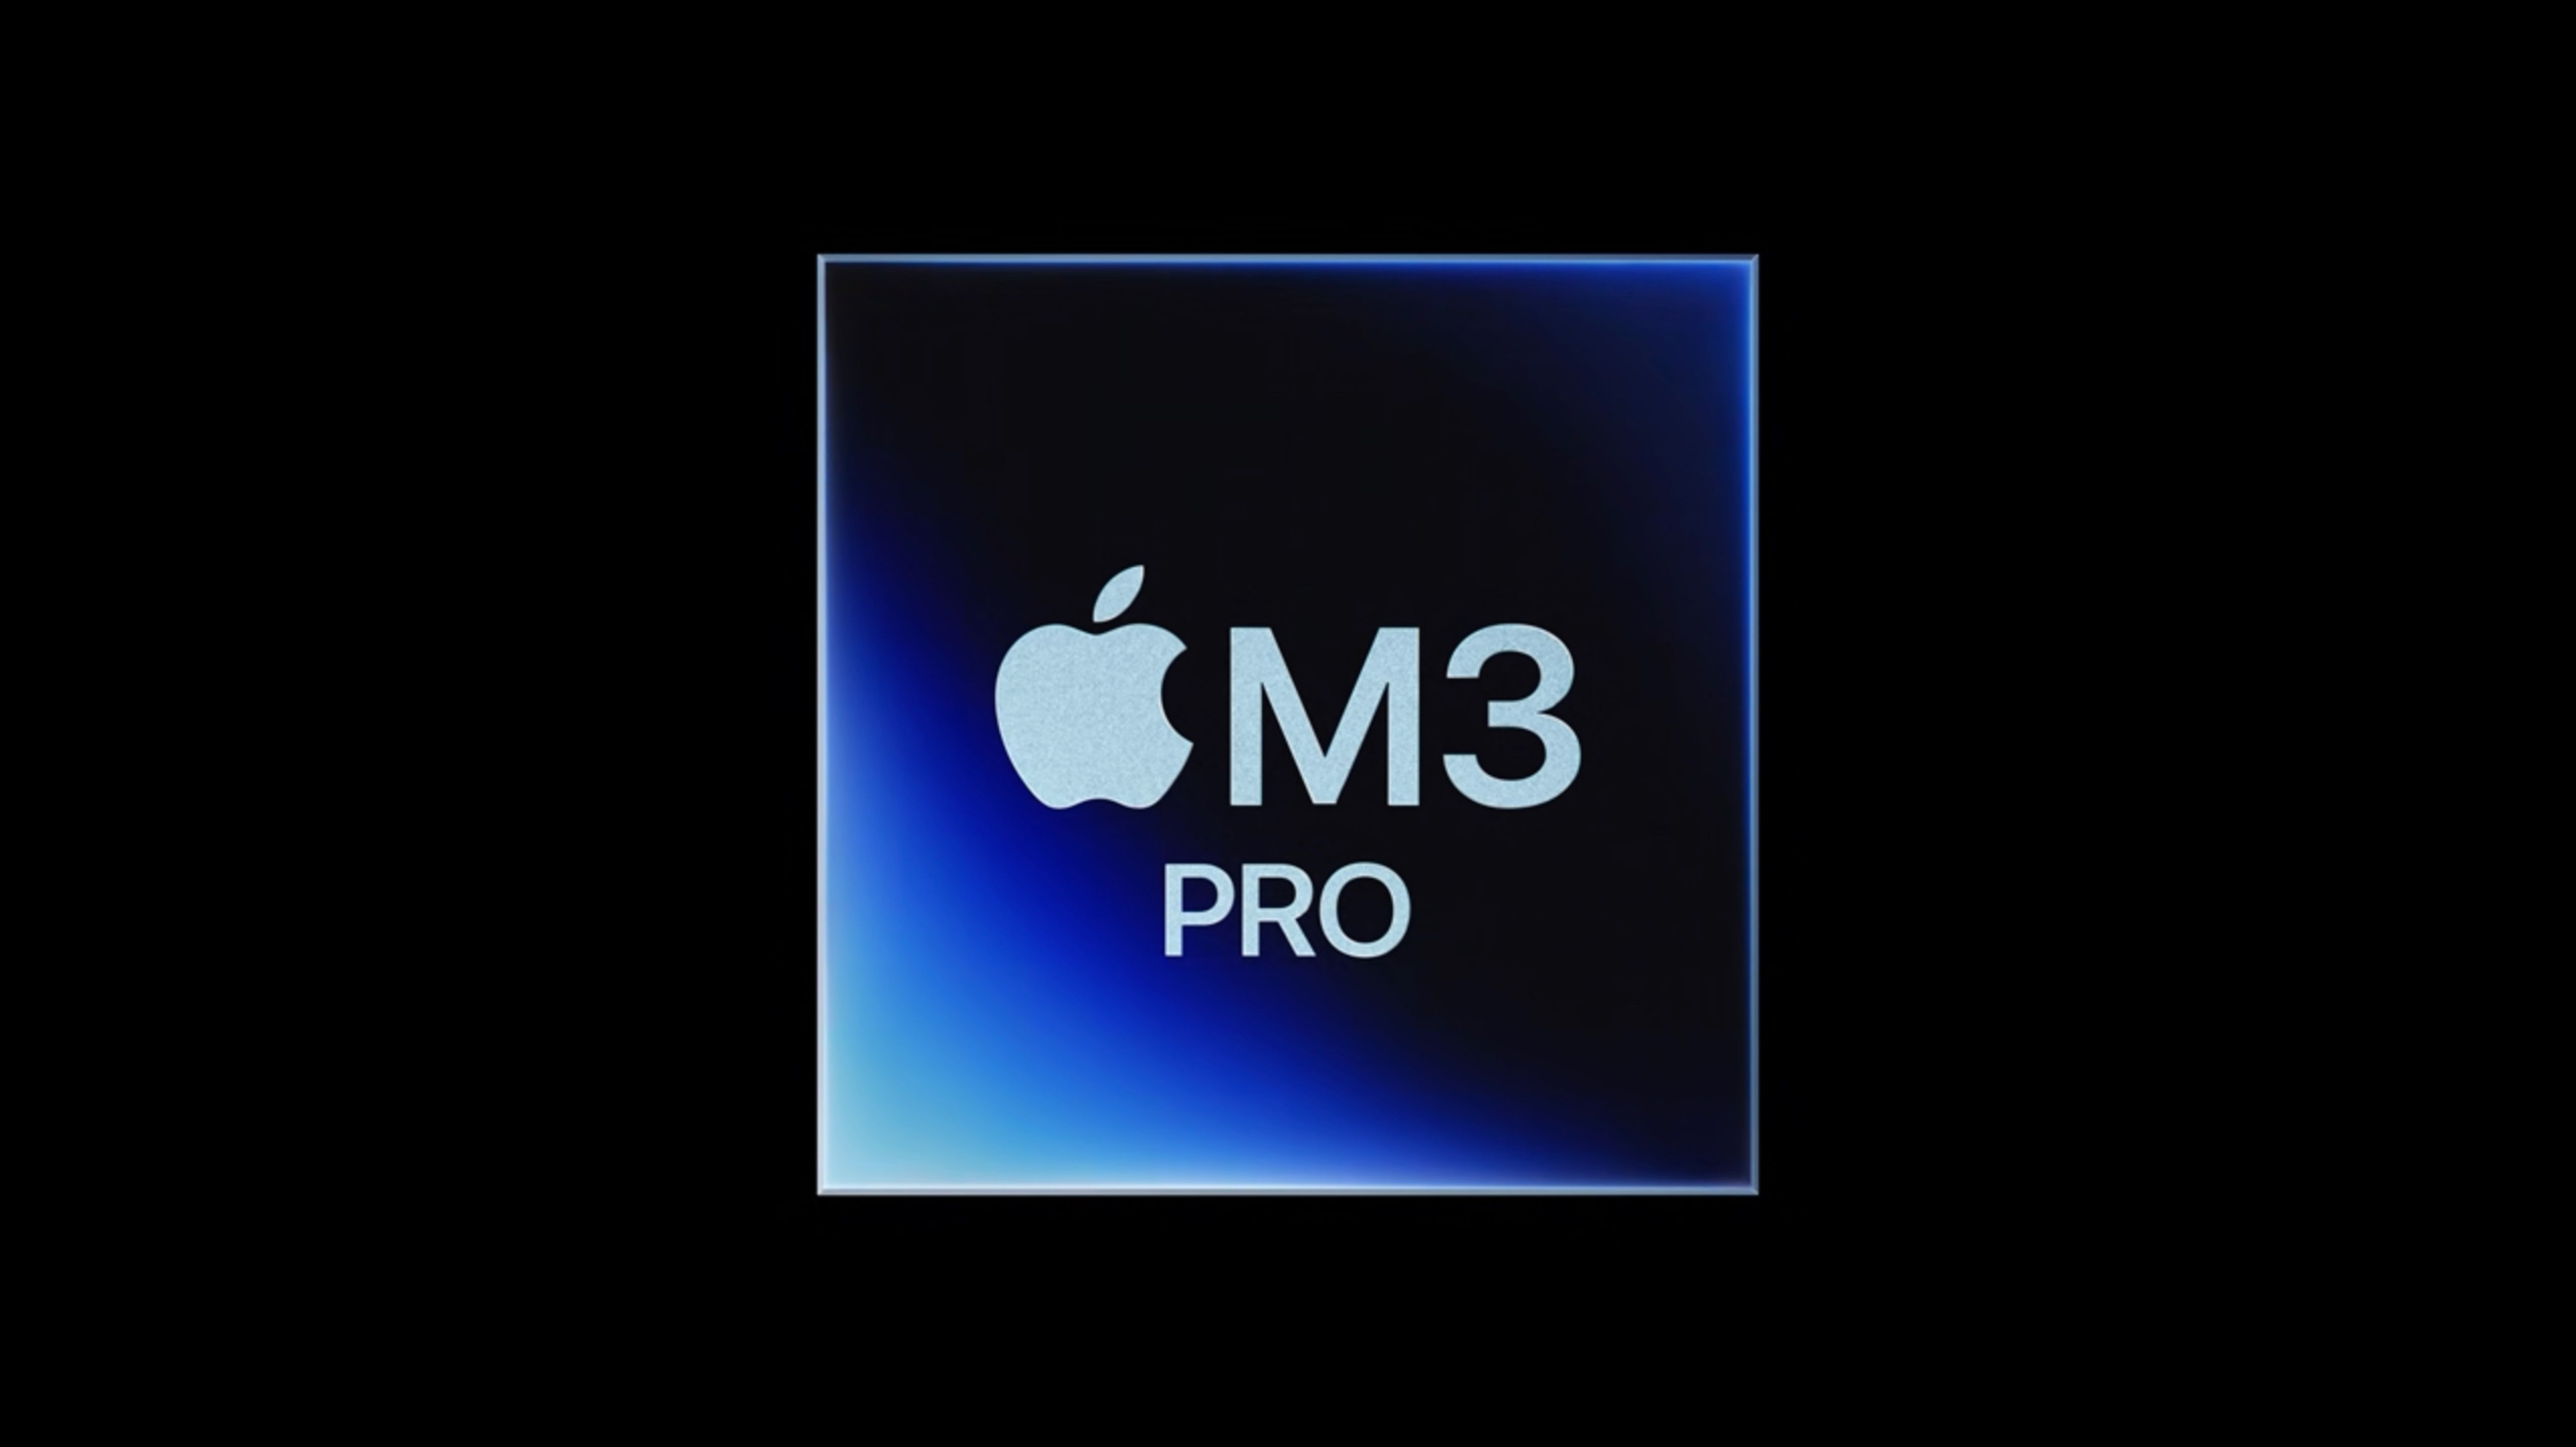 El chip M3 Pro es ligeramente más rápido que el M2 Pro en un resultado de referencia no verificado